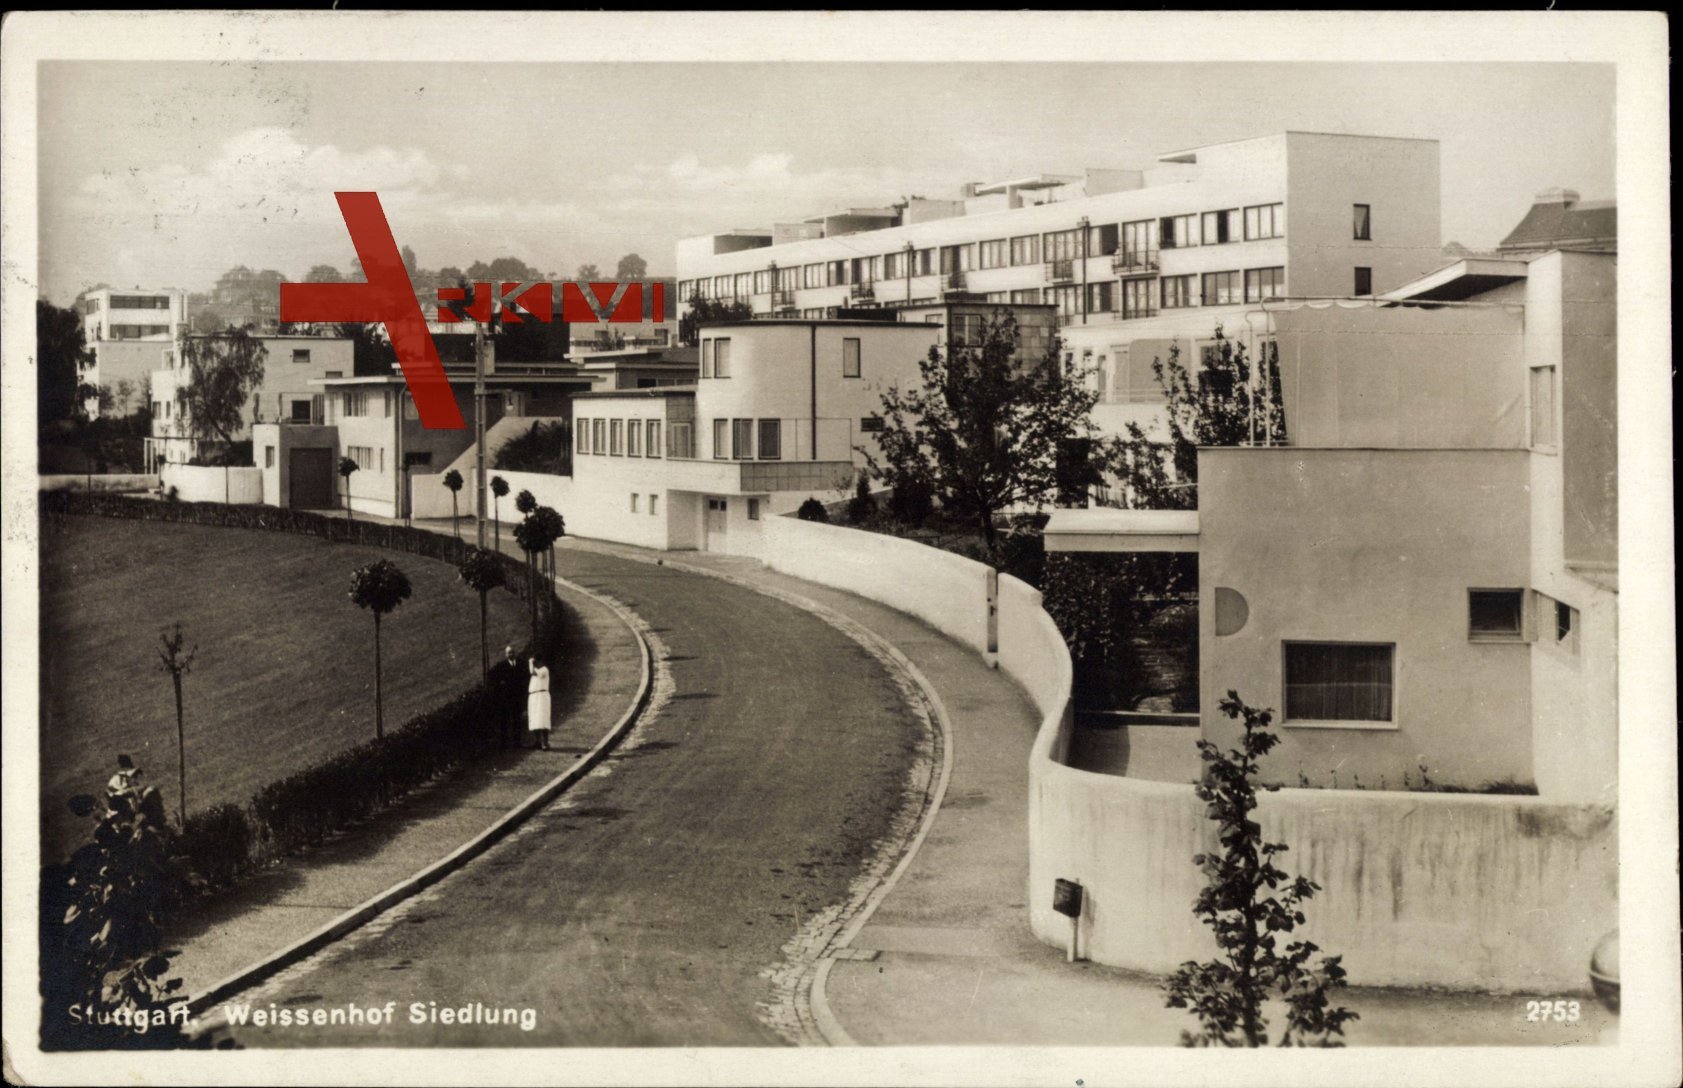 Stuttgart Weißenhofsiedlung, Blick in die Siedlung, Straßenpartie